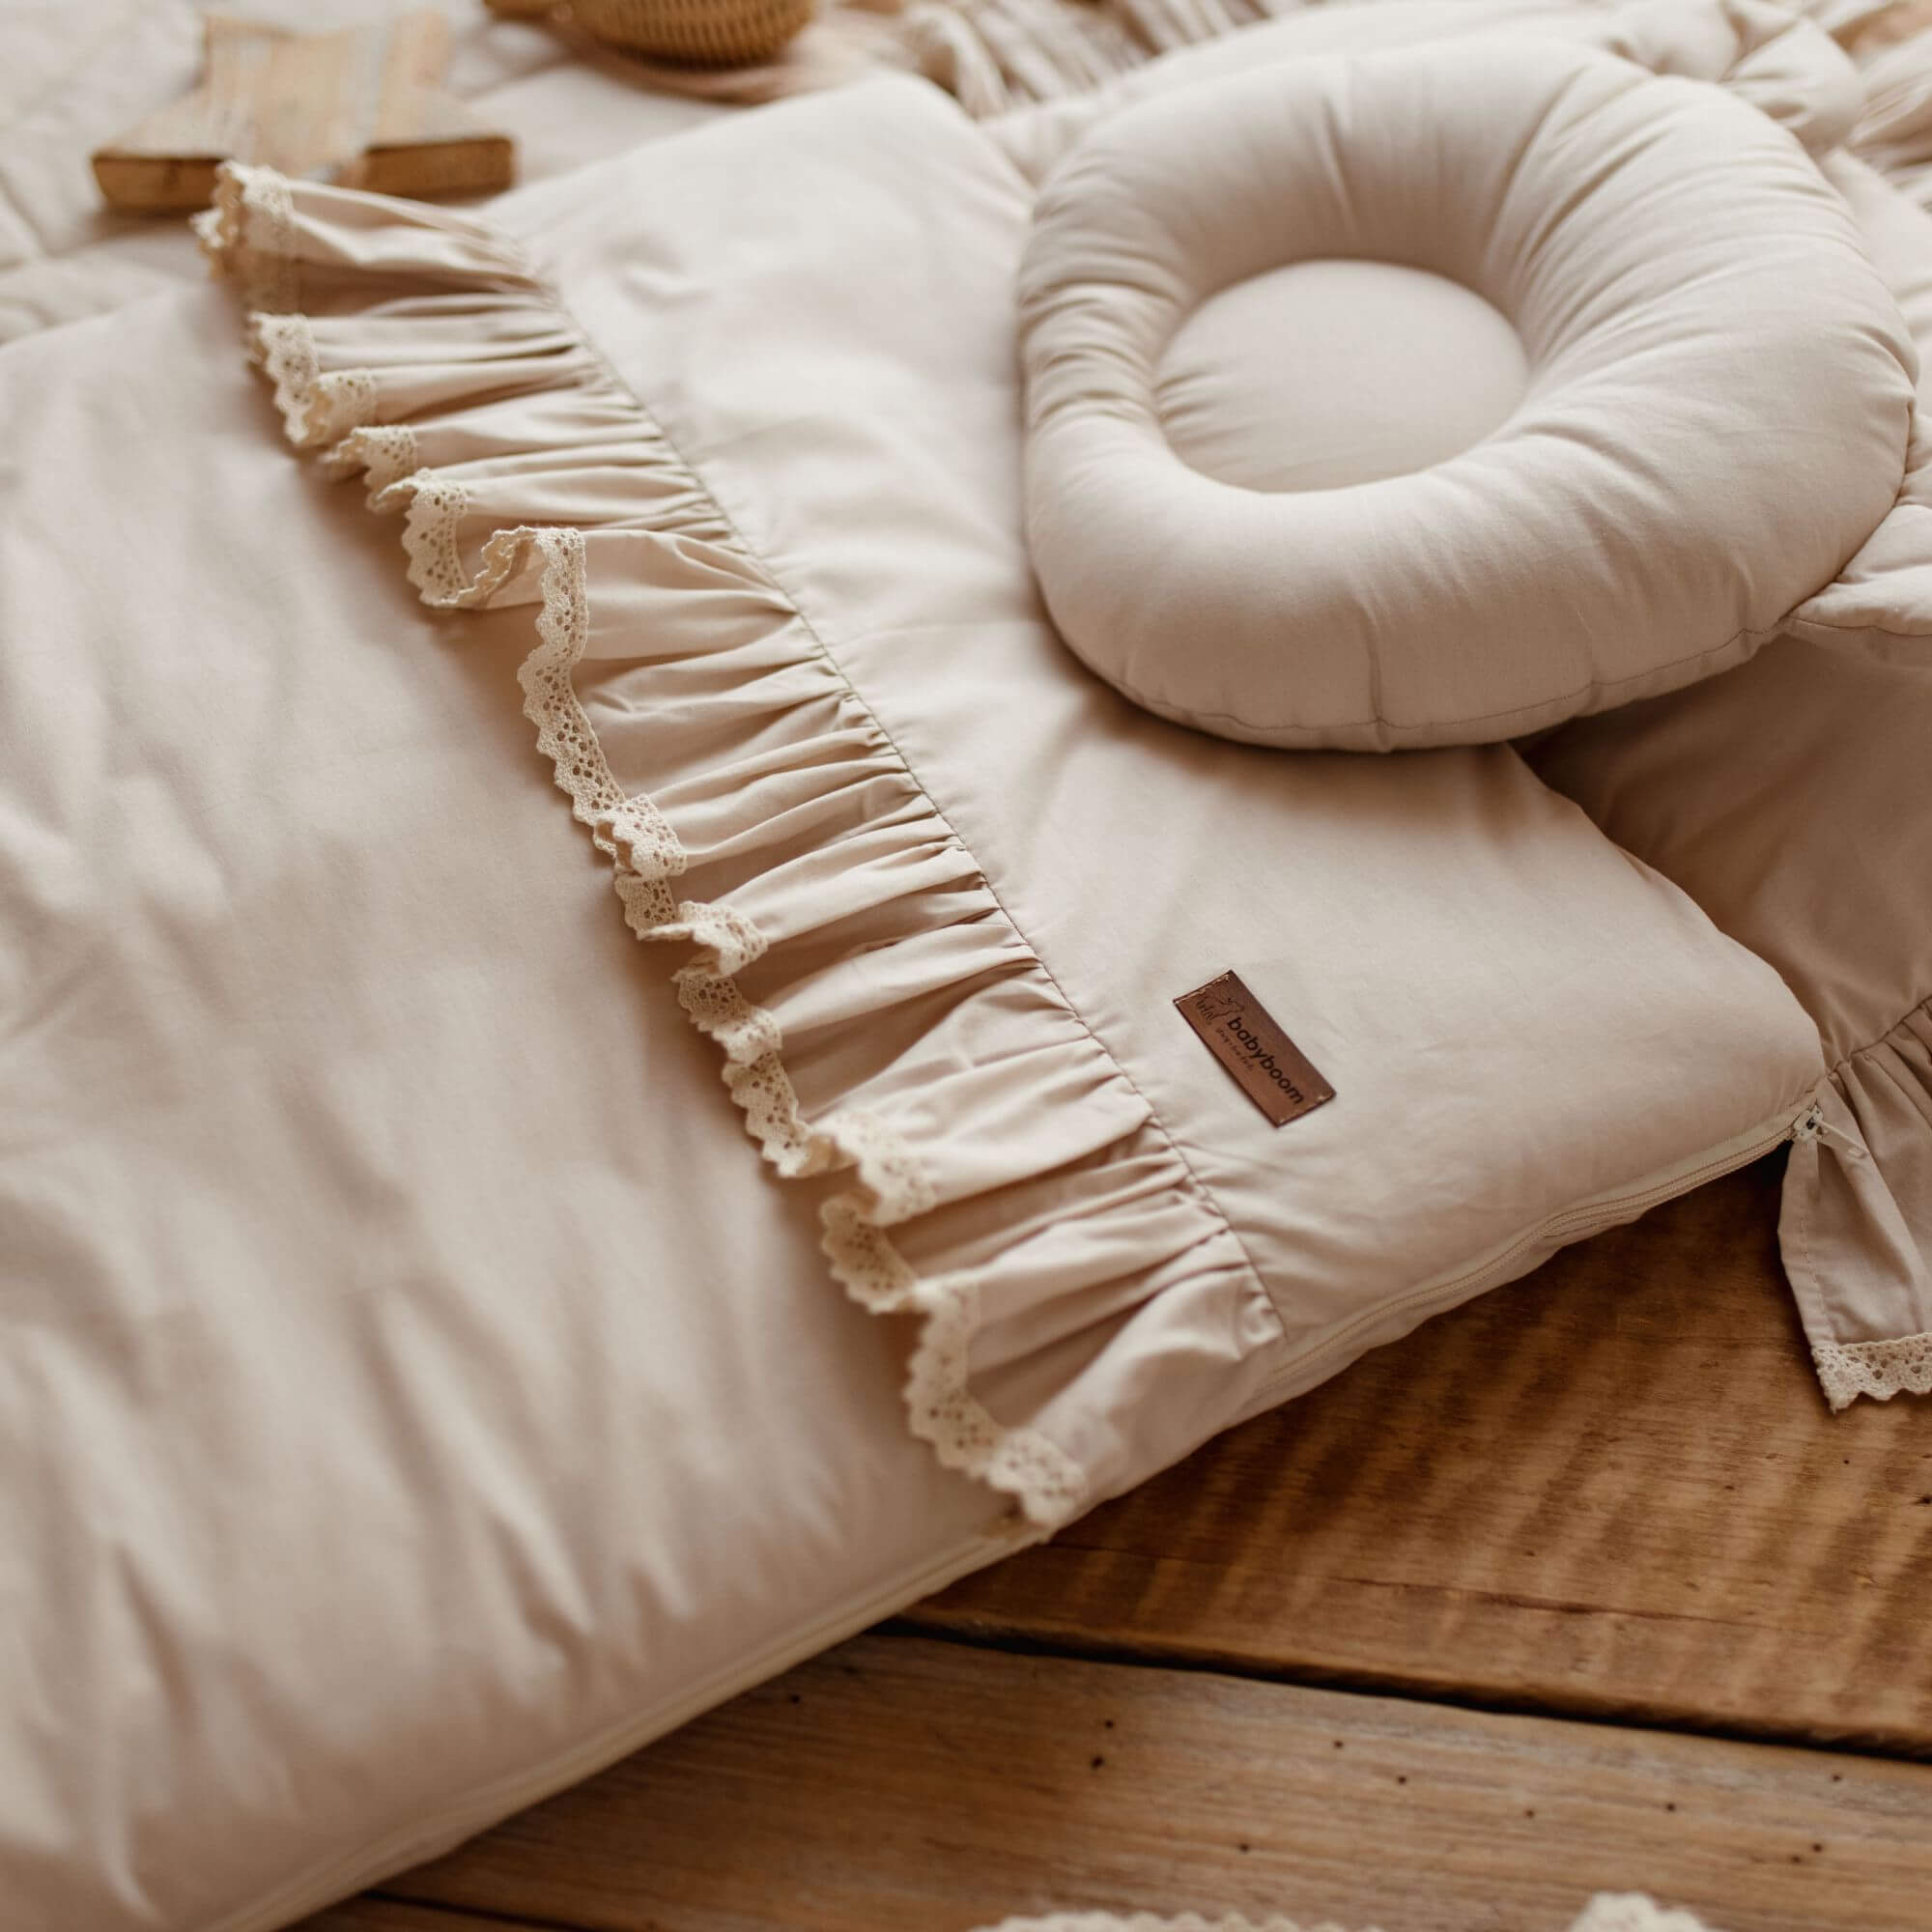 Flacher Schlafsack RETRO ROMANTIC mit Rüschen & beige Spitze | Baumwolle